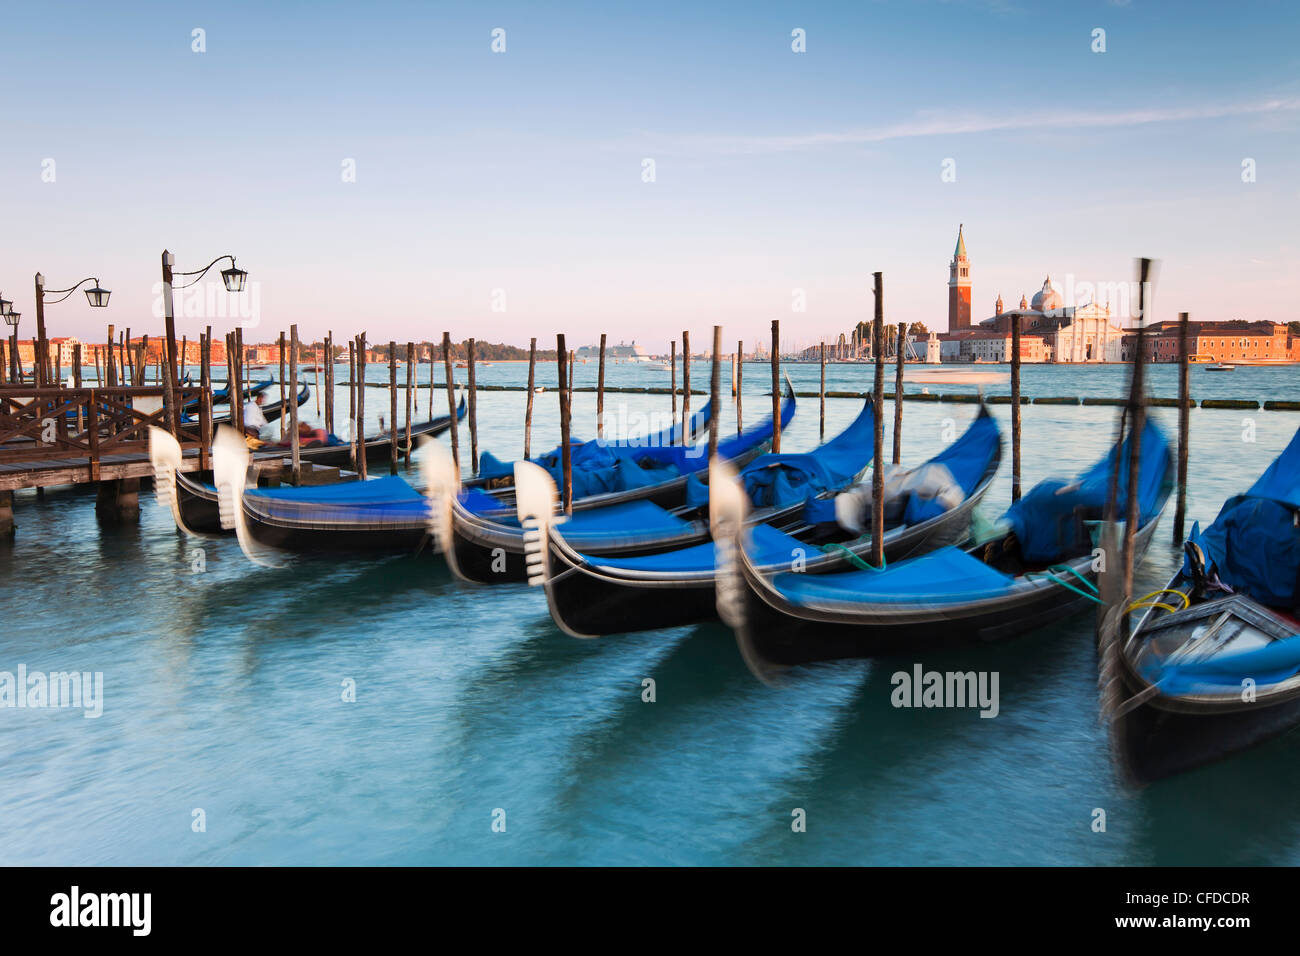 Quai de la Place St Marc avec les gondoles et la vue de l'île de San Giorgio Maggiore, à Venise, Vénétie, Italie Banque D'Images